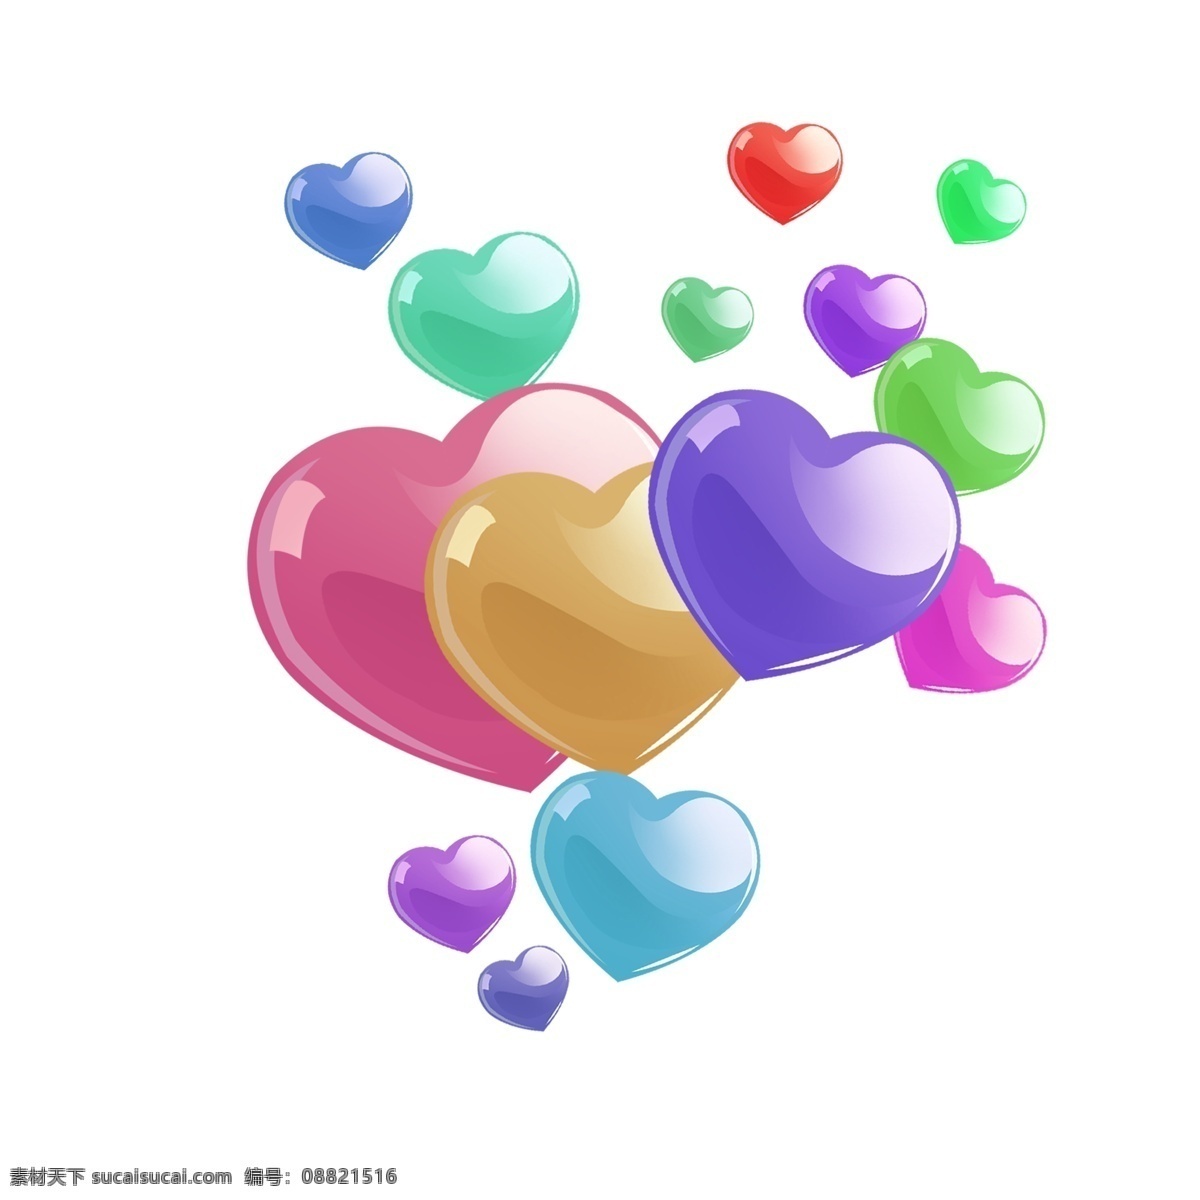 五彩 爱心 气球 插画 五彩的气球 爱心气球 卡通插画 气球插画 爱情插画 礼物插画 粉色的气球